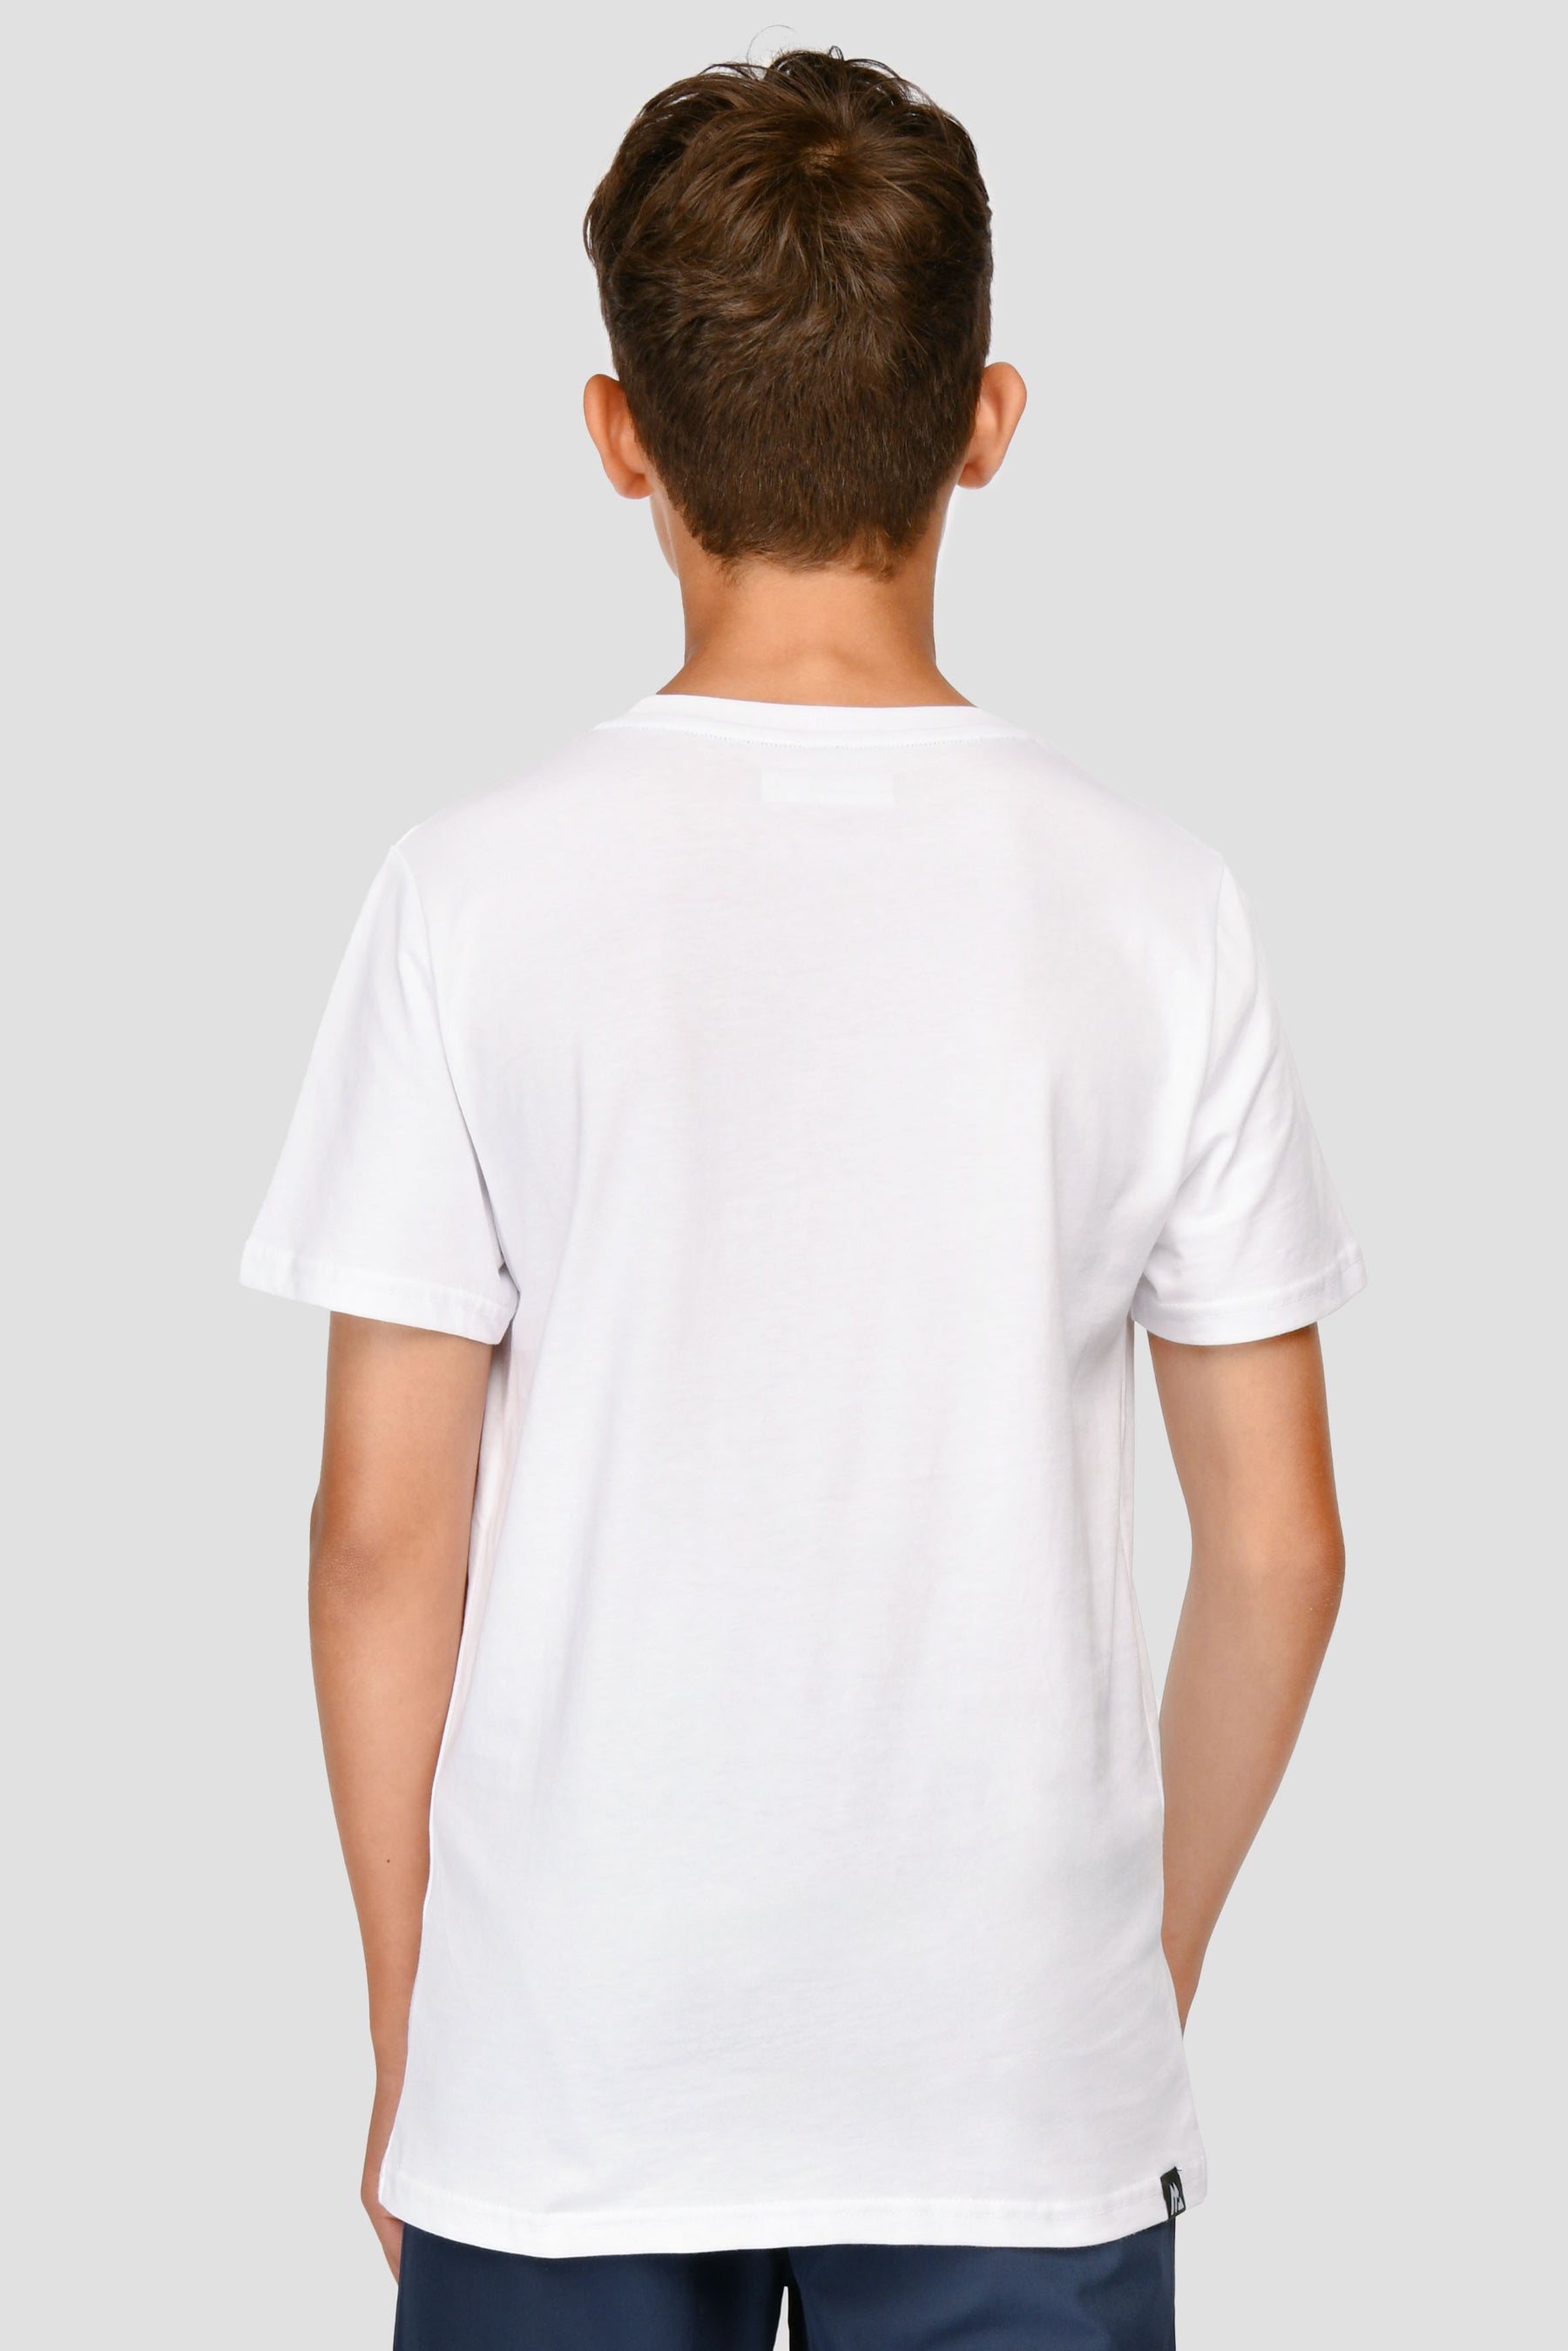 Junior Digi Camo Box T-Shirt - White